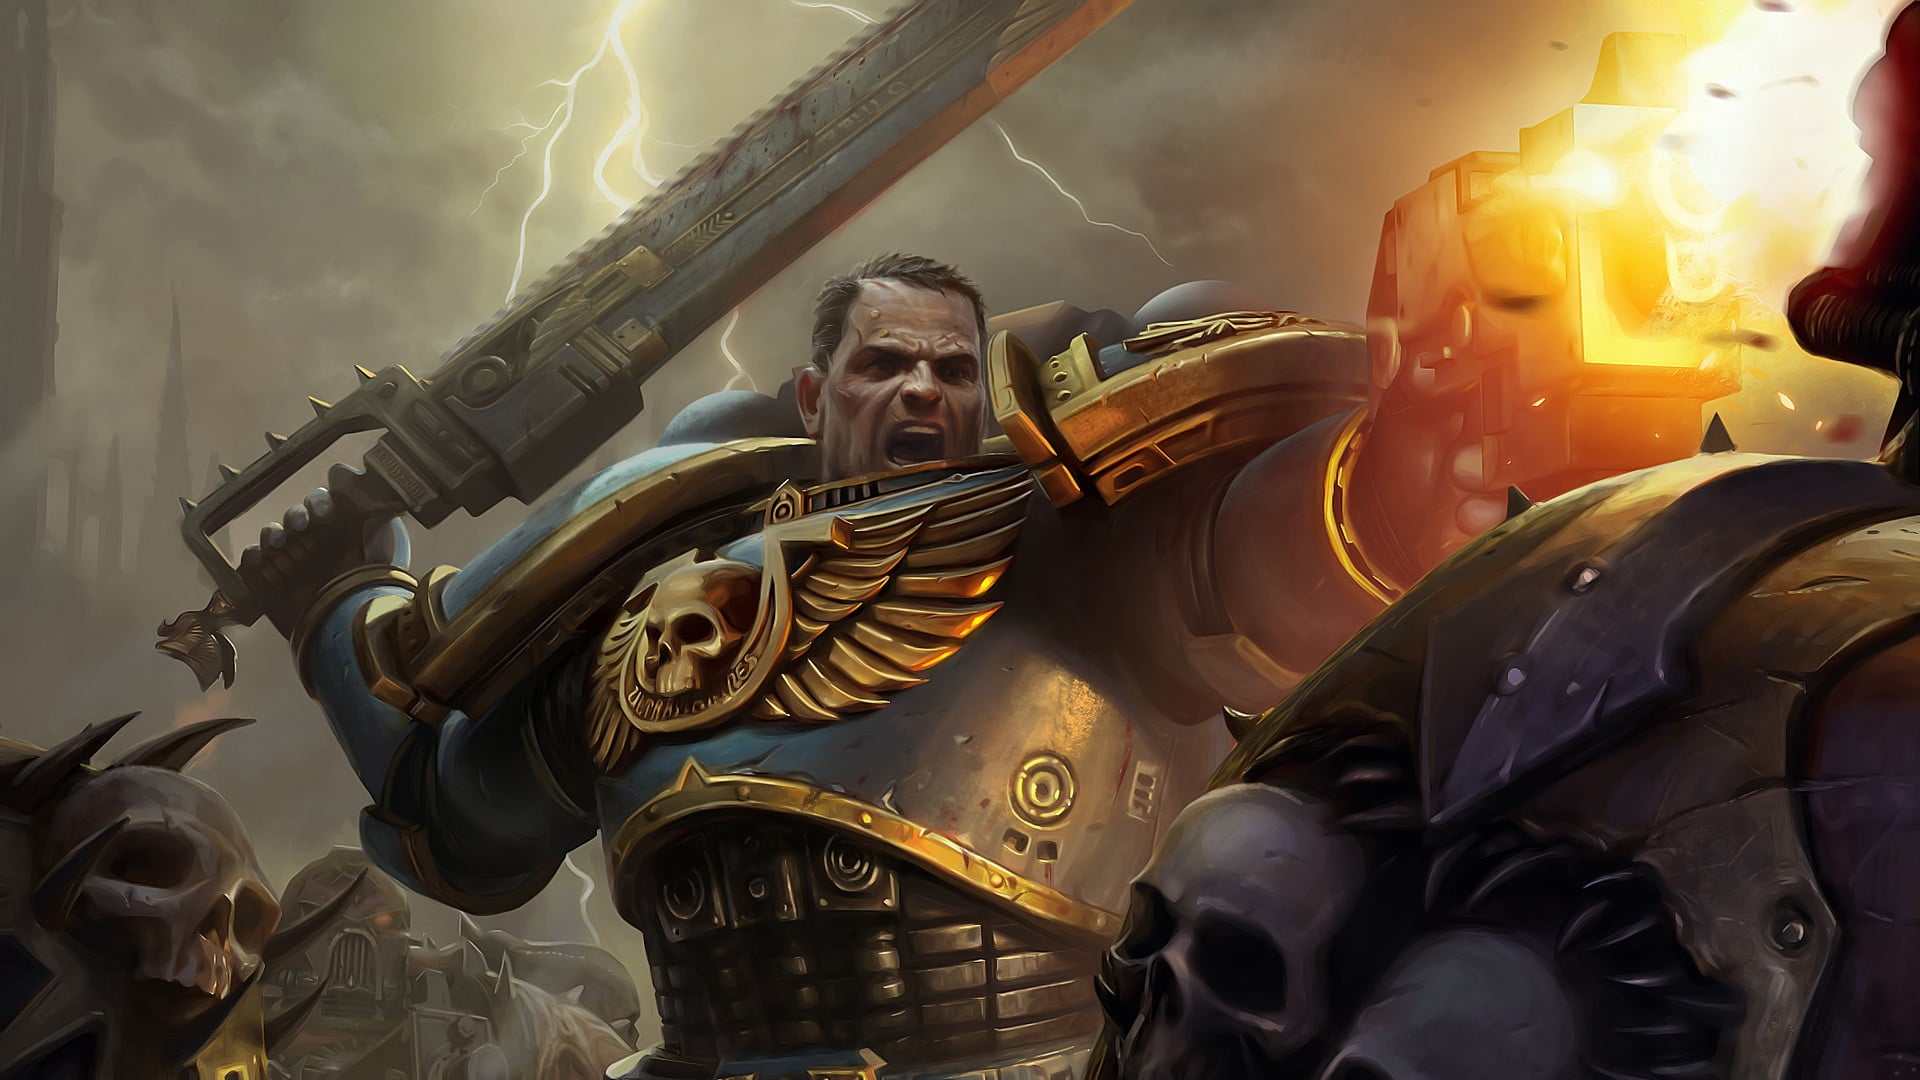 Warhammer 40,000, Space Marine, armor, fantasy art, lightning